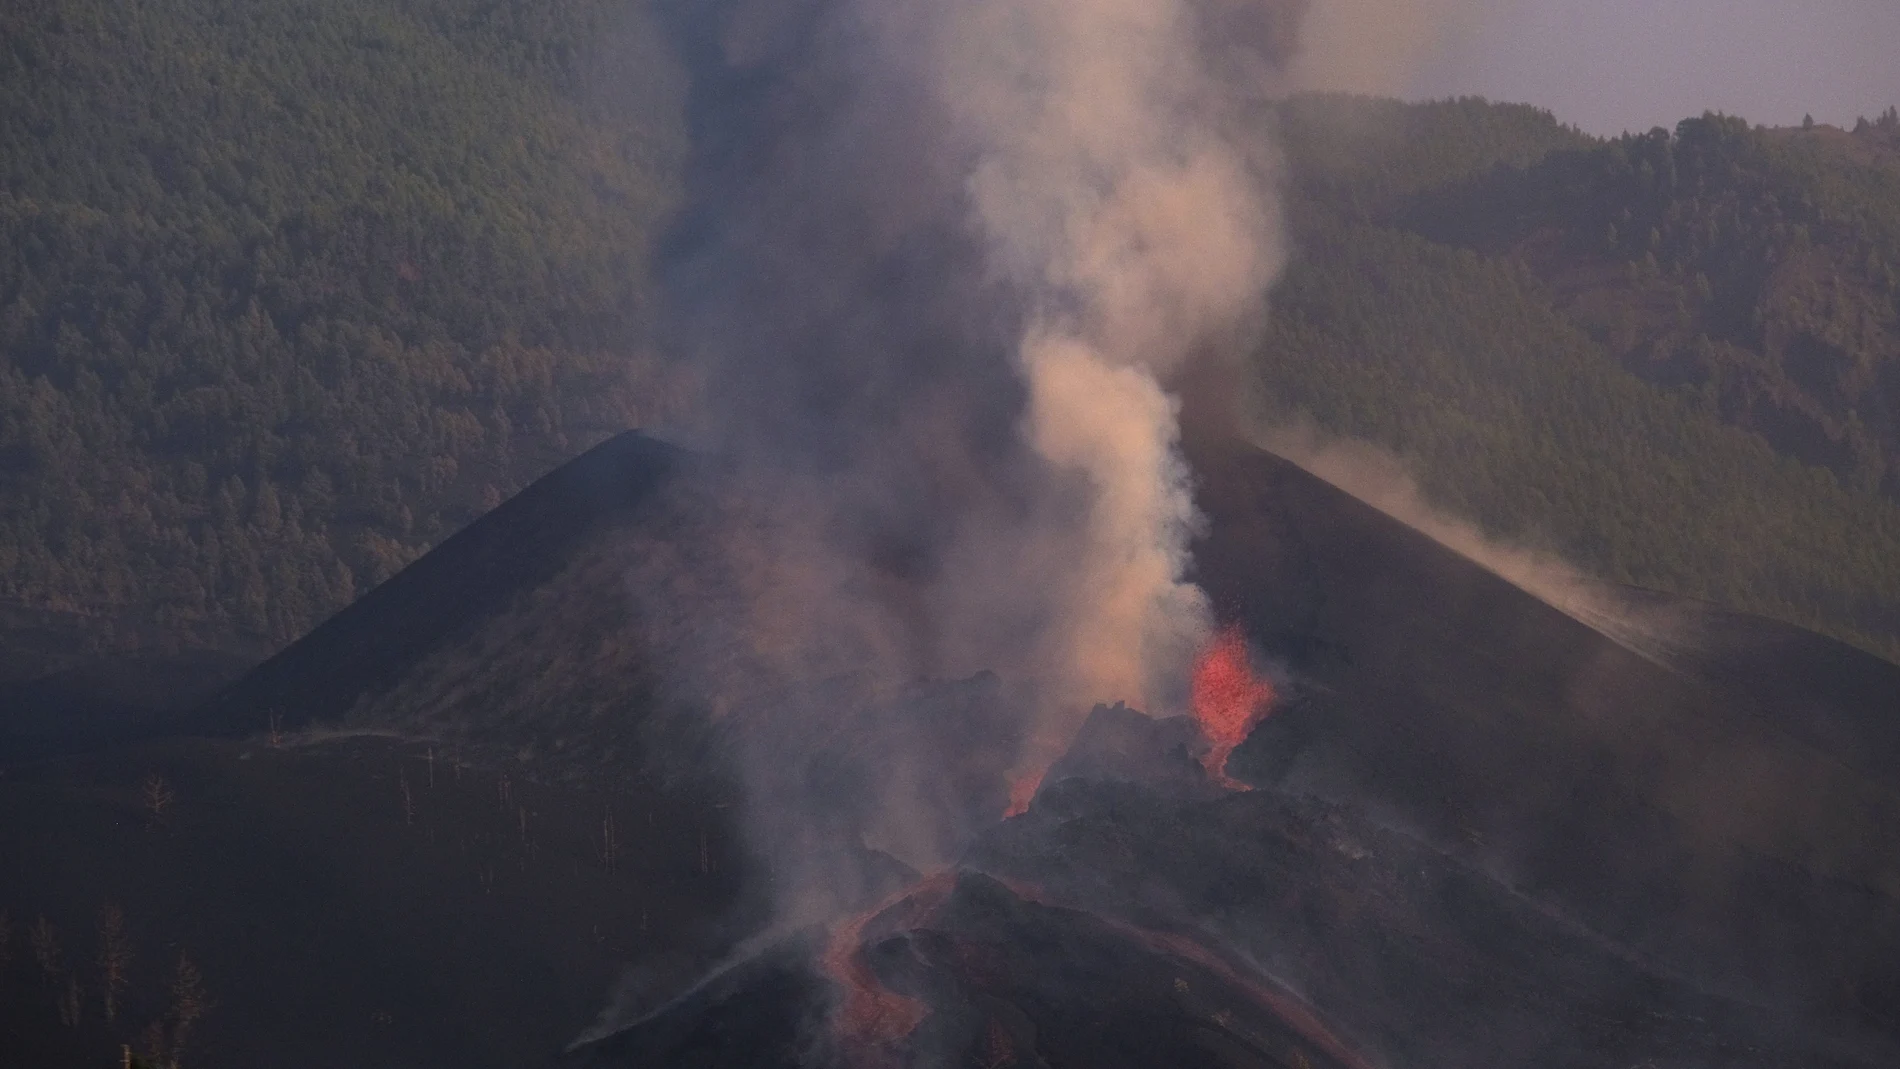 Uno de los conos cede y varias bocas del volcán quedan unidas